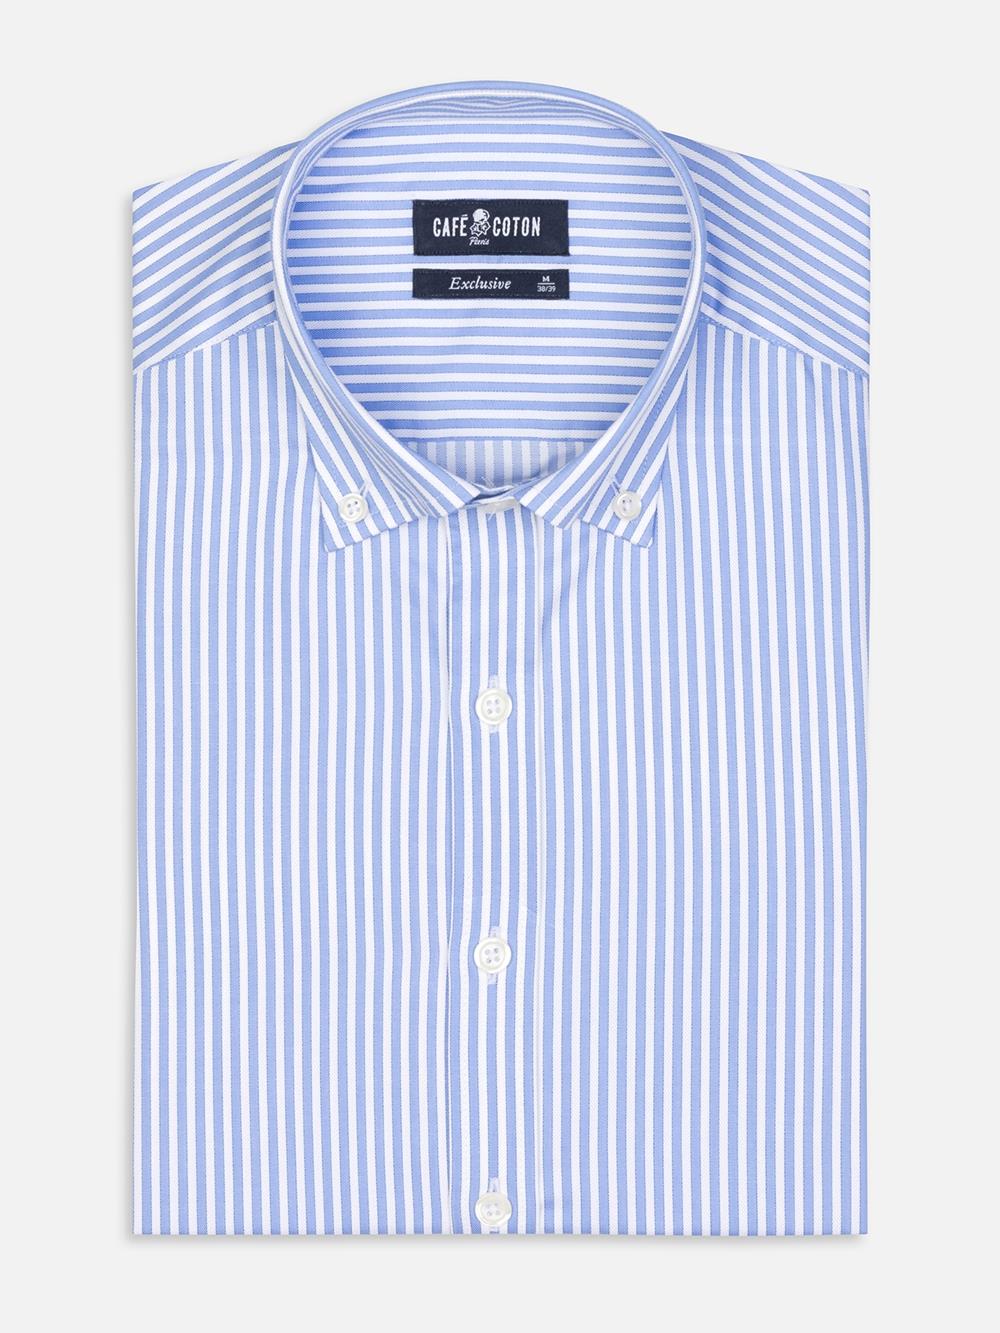 Tailliertes Tailliertes Hemd Colin mit Streifenmuster himmelblau  - Buttondown Kragen